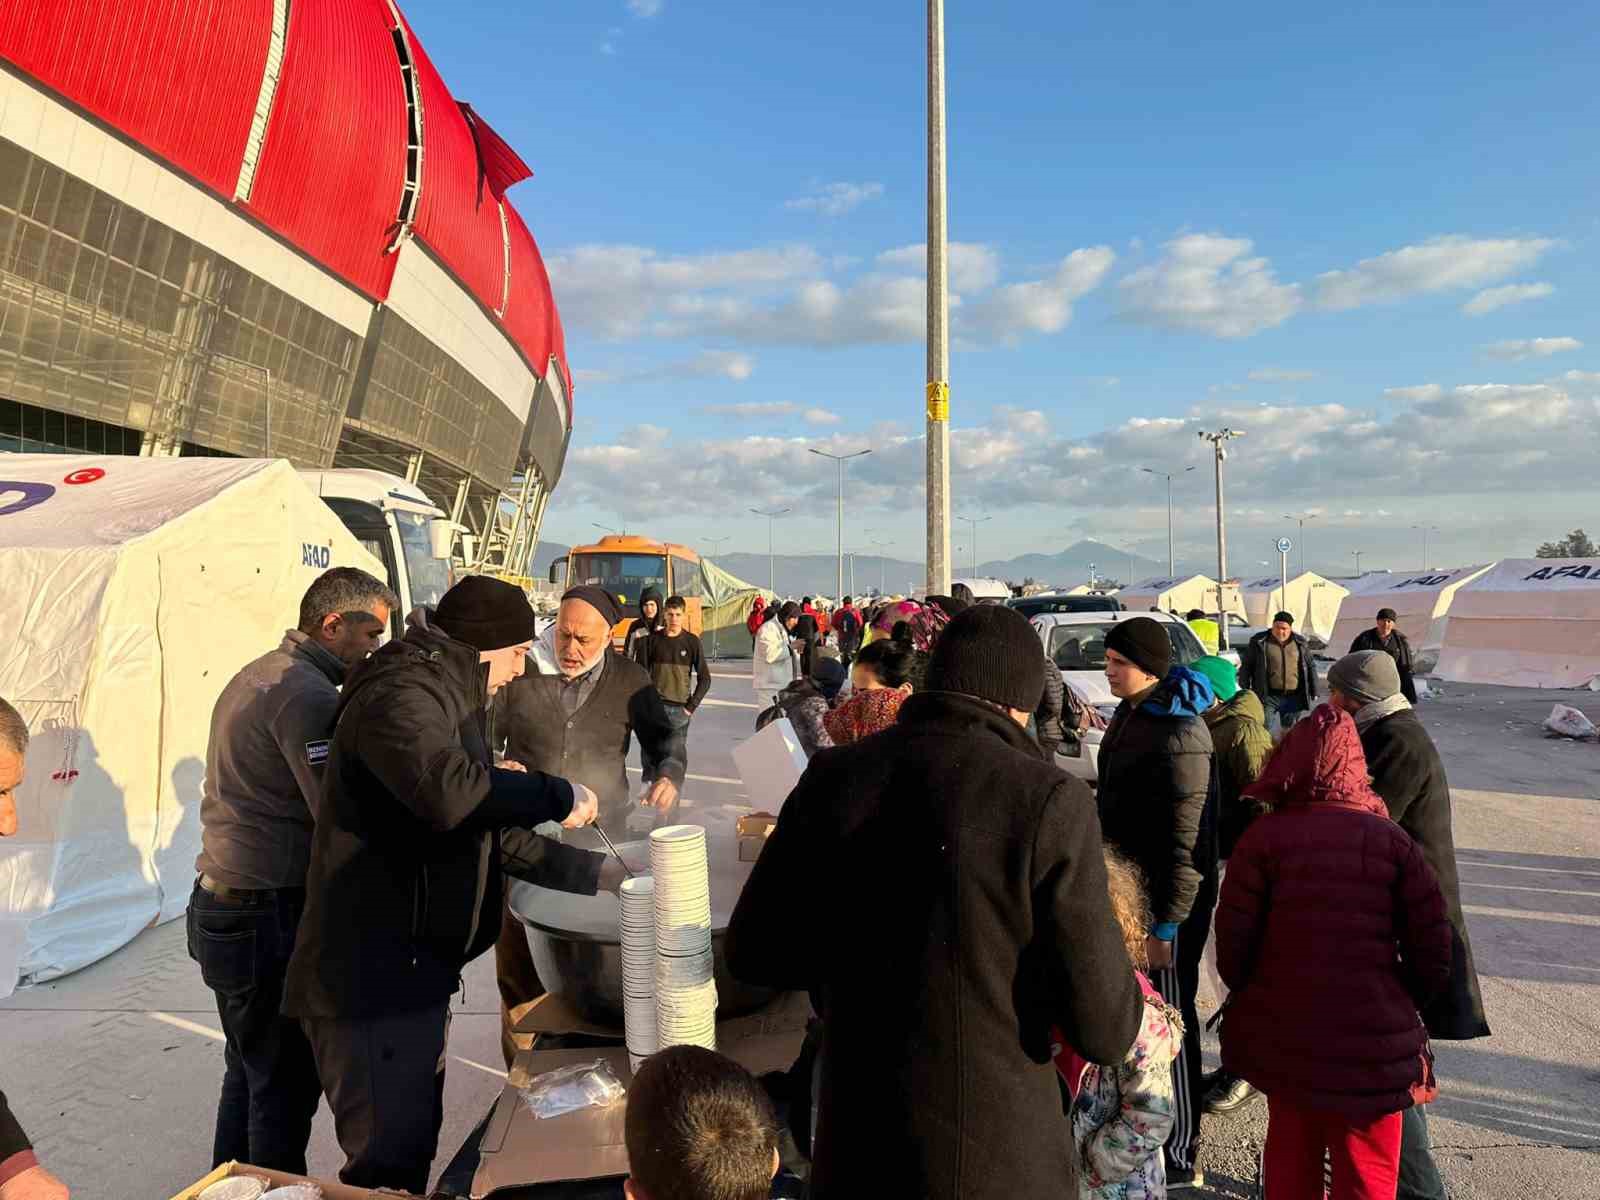 Osmangazi Belediyesi’nden depremzede vatandaşlara çorba ikramı